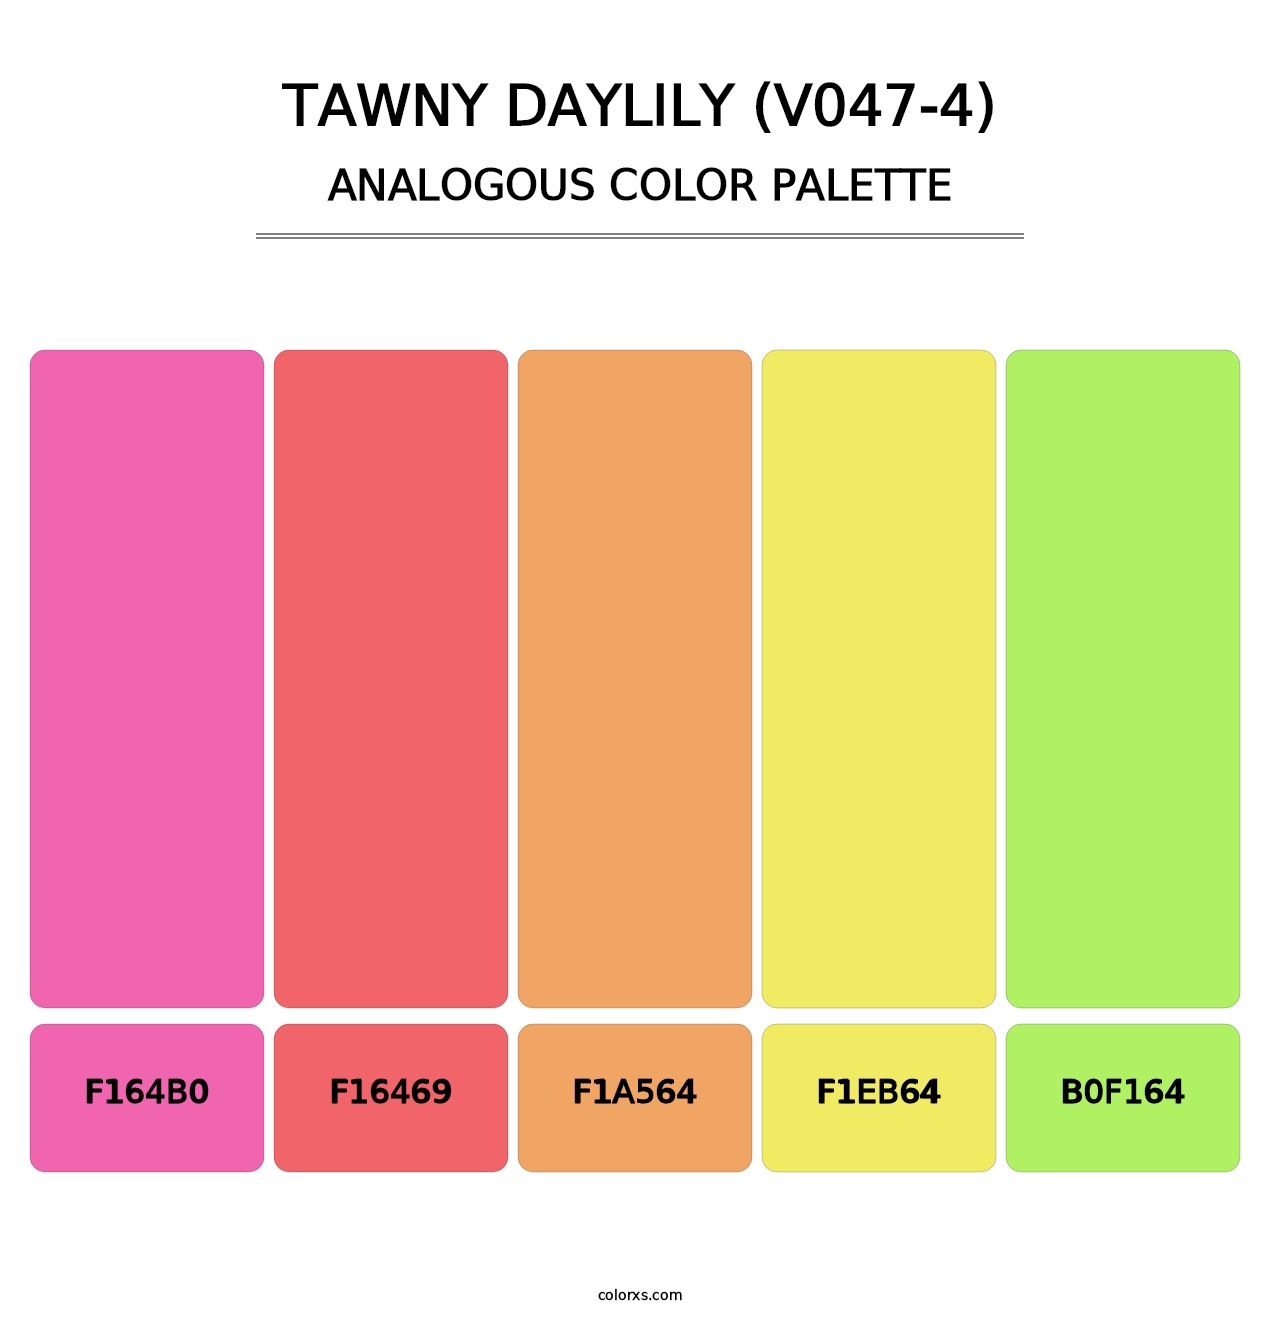 Tawny Daylily (V047-4) - Analogous Color Palette